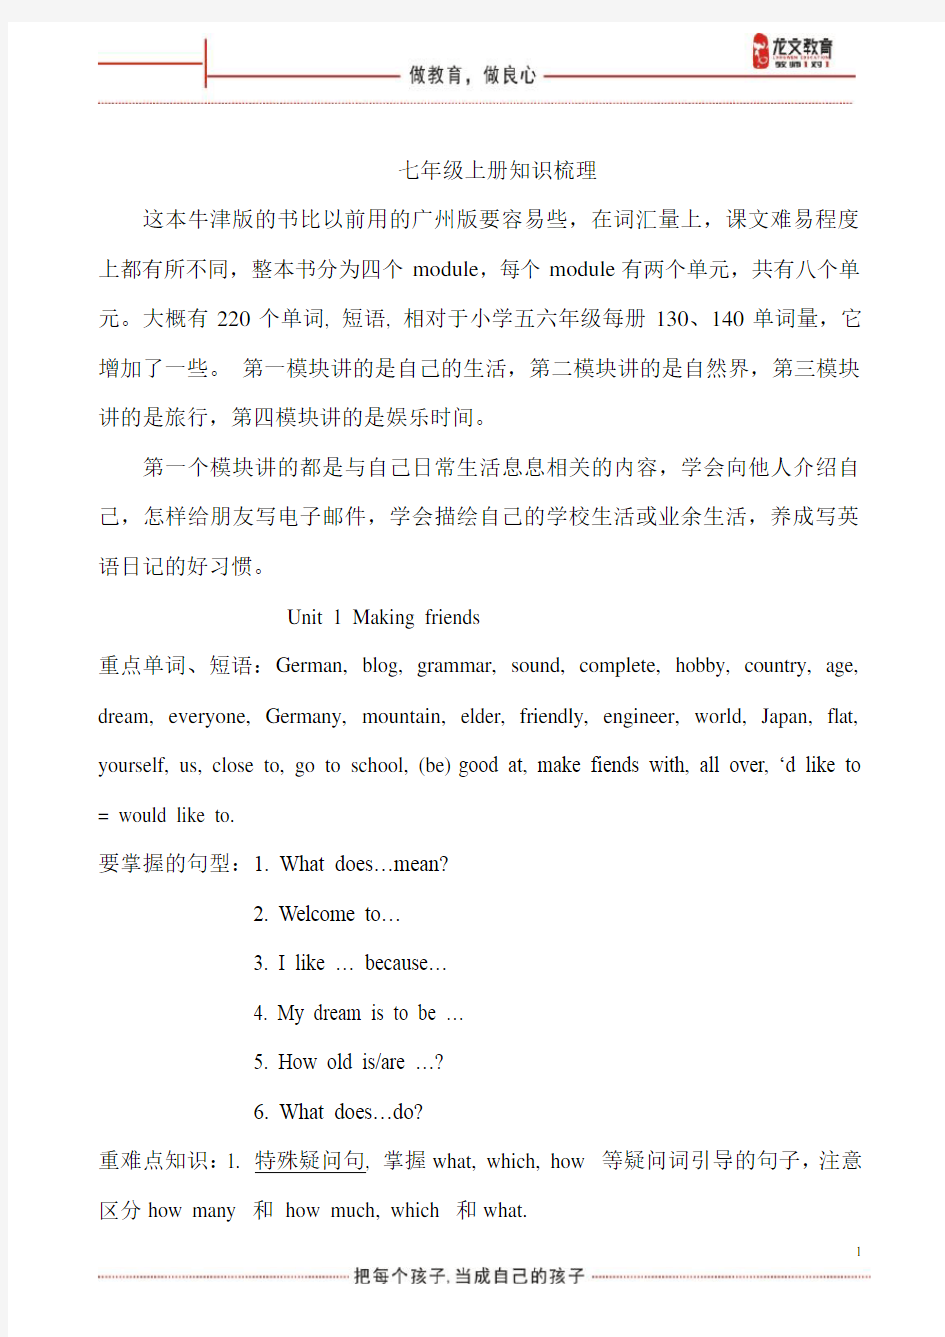 广州最新版英语七年级上册教材梳理